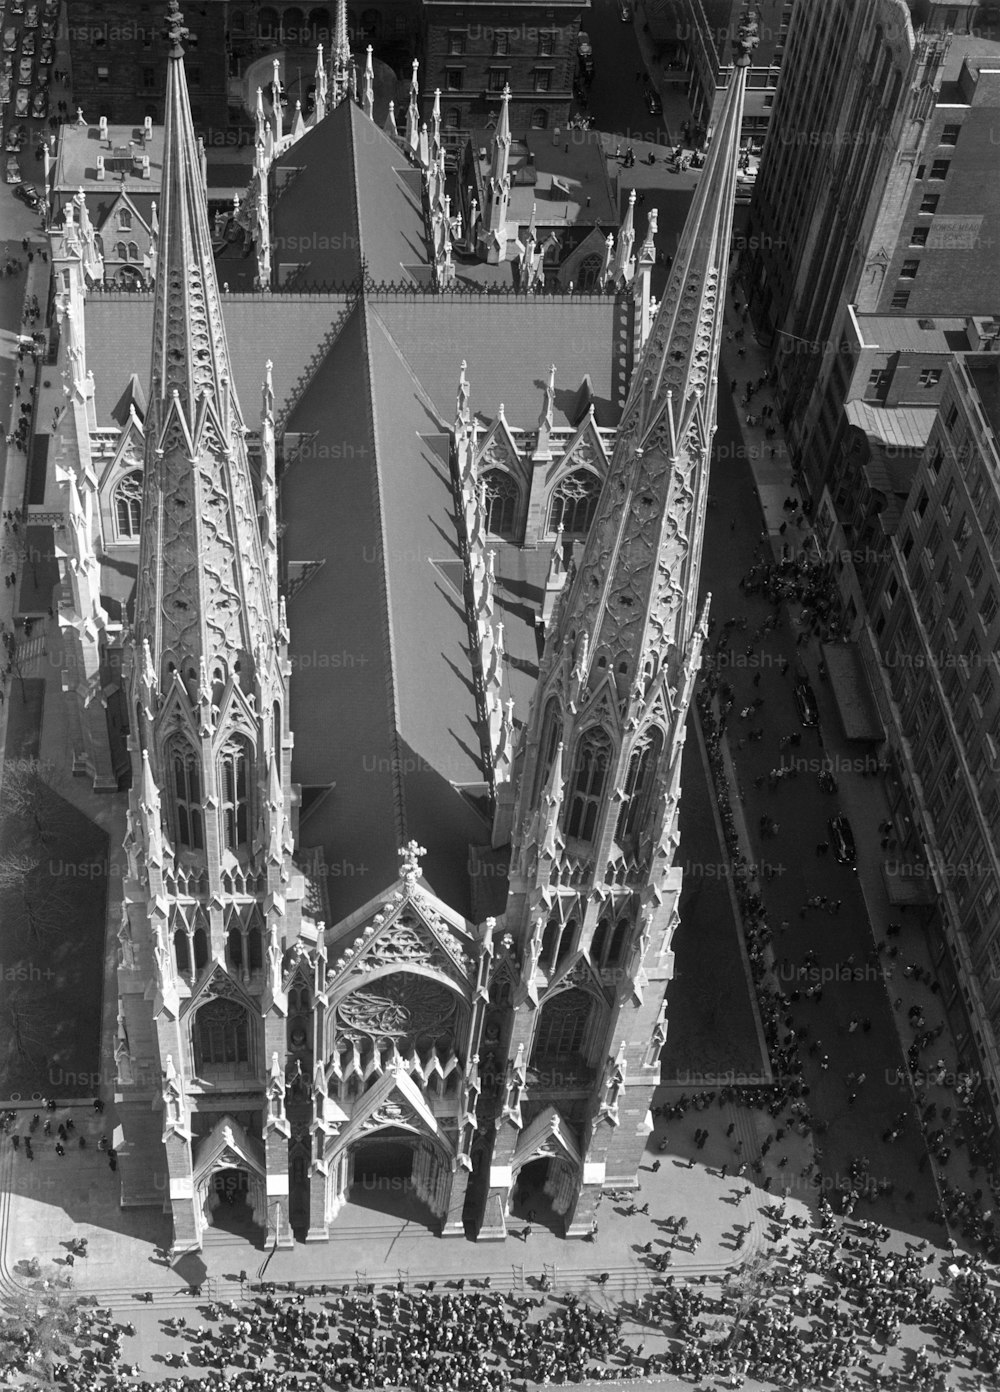 STATI UNITI - 1950 circa: New York City, Cattedrale di San Patrizio.